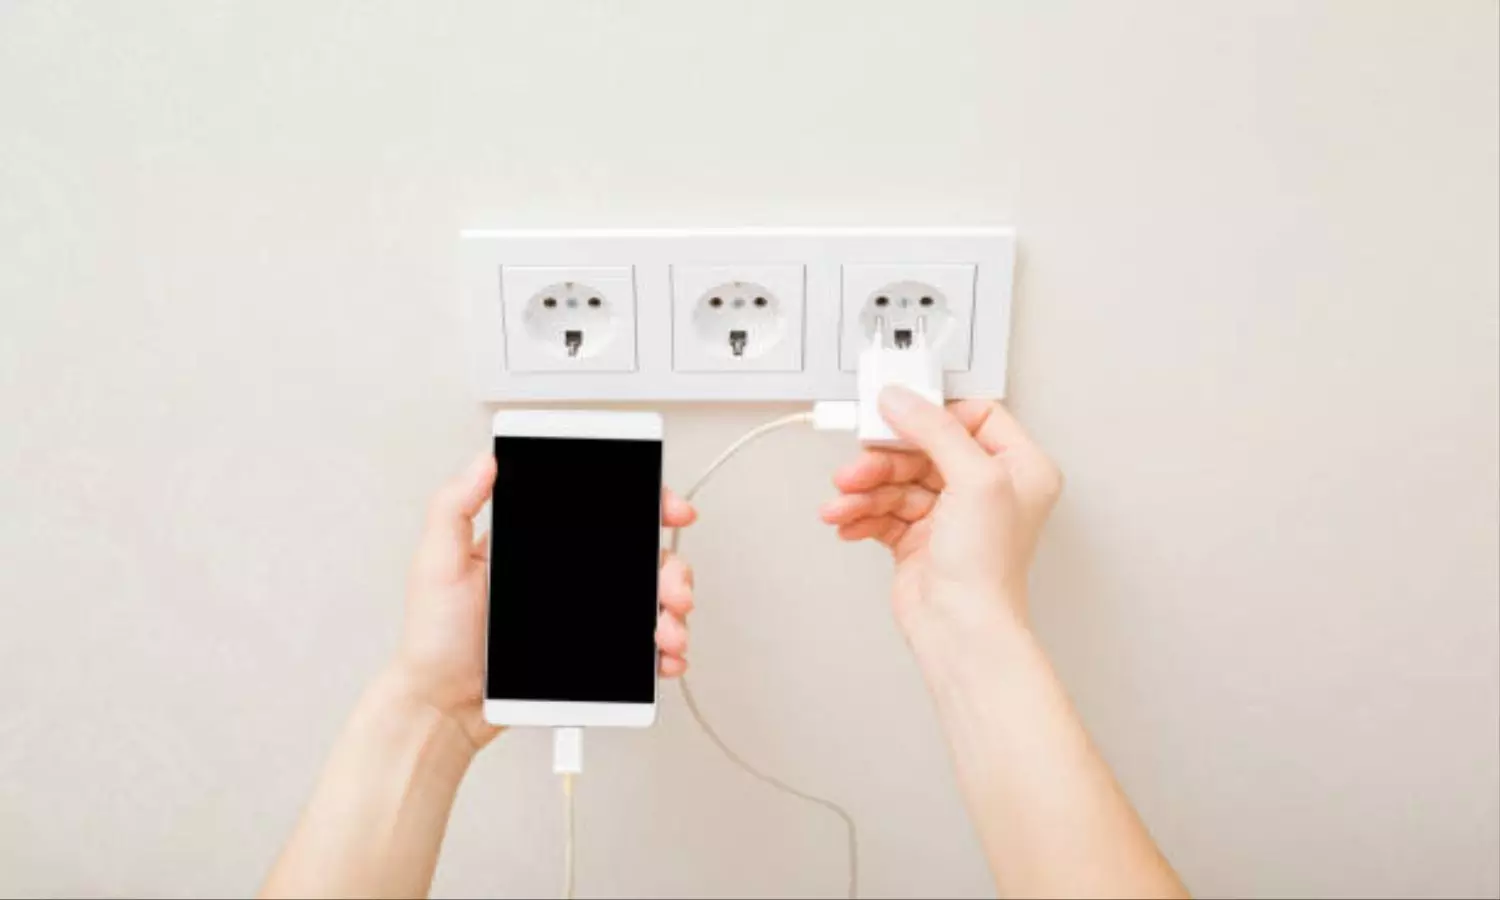 Smartphone ही नहीं चार्जर भी हो सकता है Blast, बस ध्यान रखें ये 4 बातें